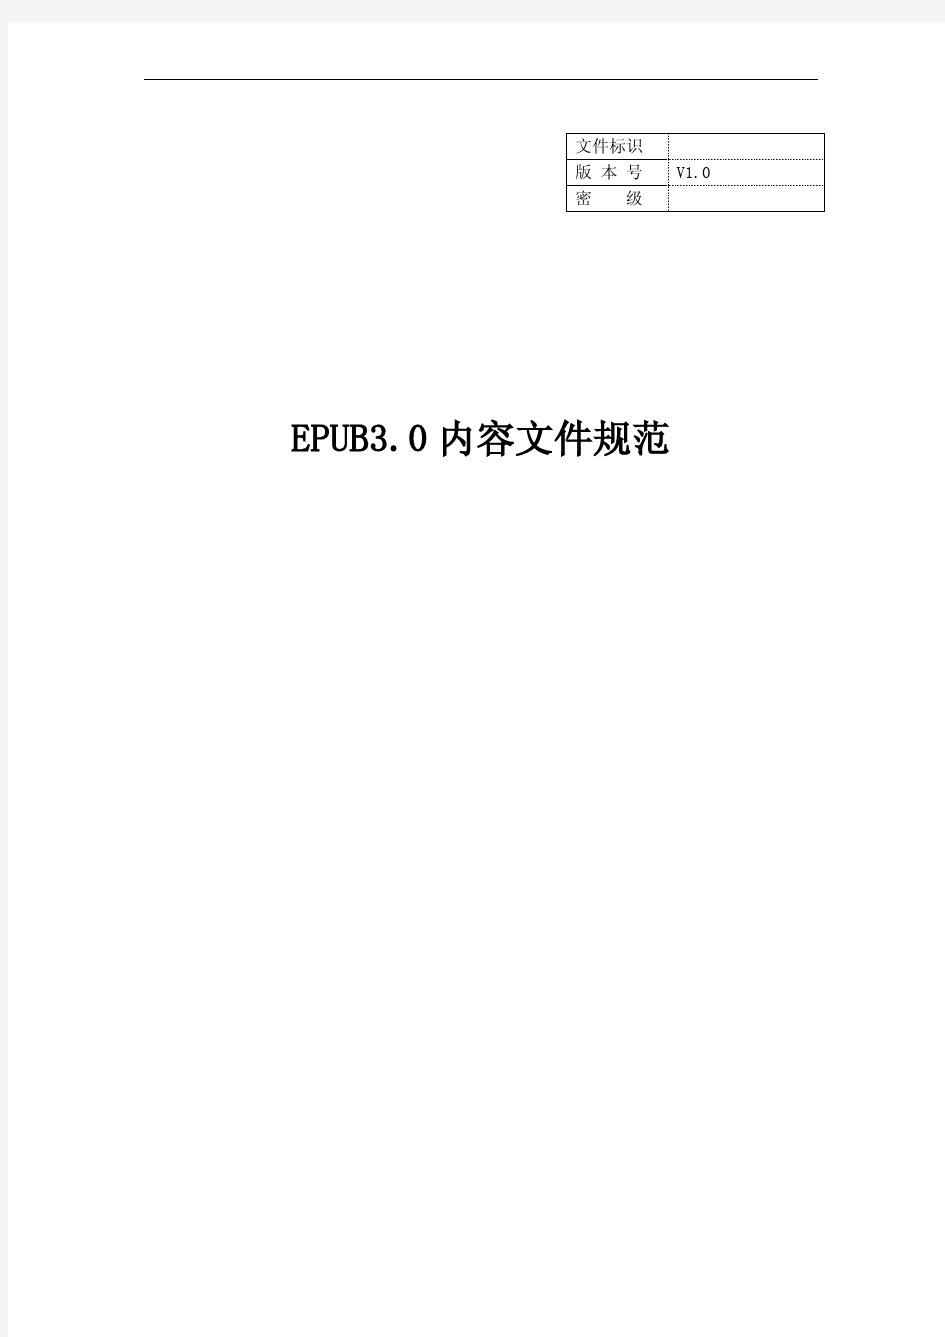 EPUB3.0内容文件规范中文版